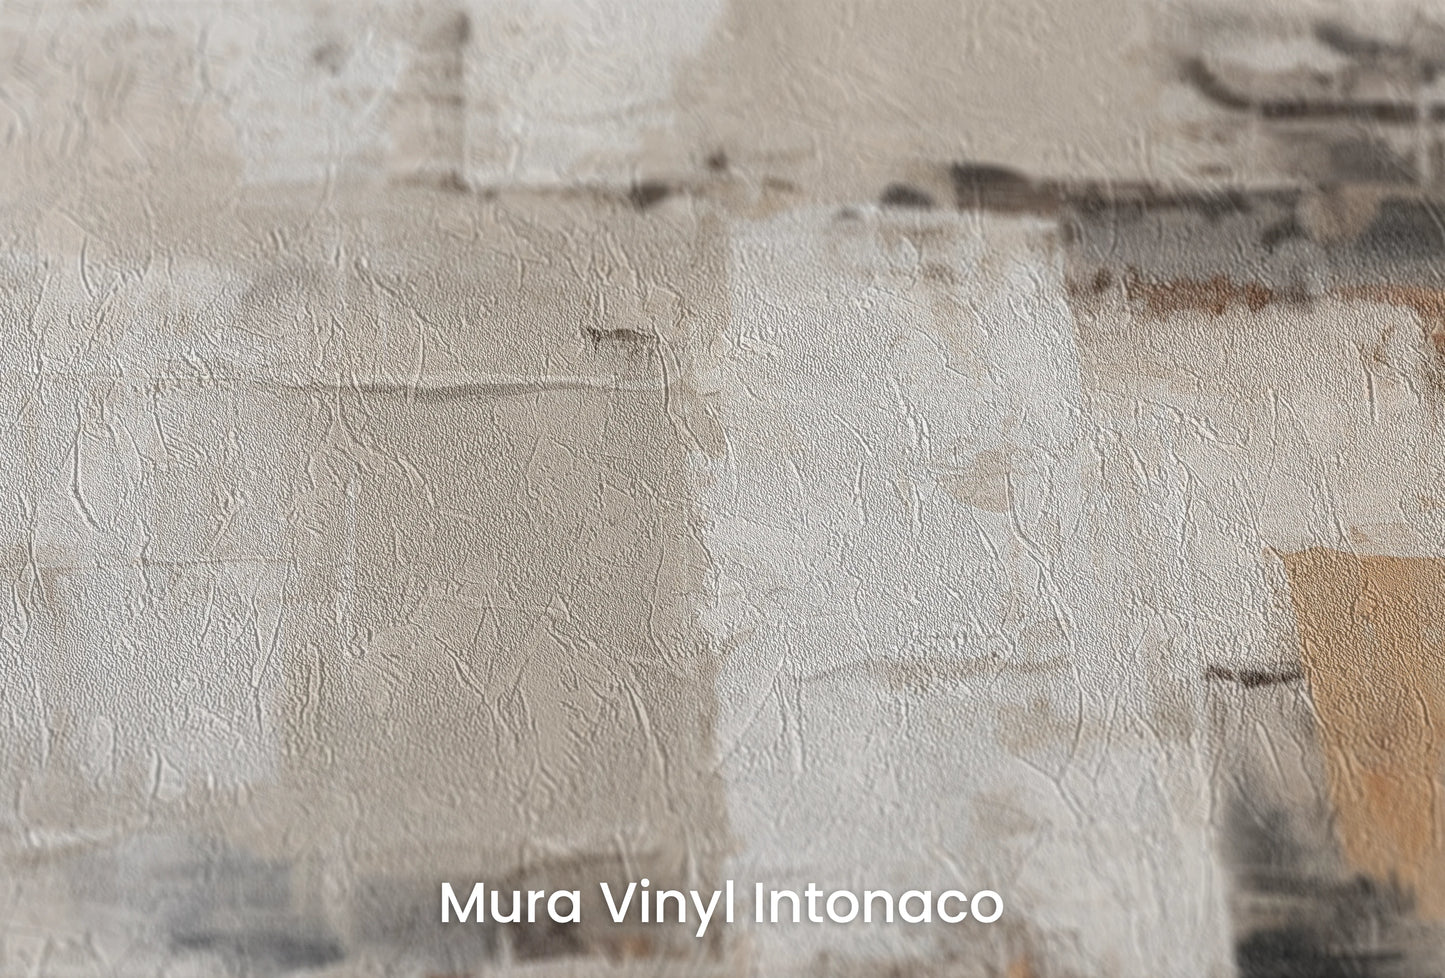 Zbliżenie na artystyczną fototapetę o nazwie Abstract Impressions na podłożu Mura Vinyl Intonaco - struktura tartego tynku.